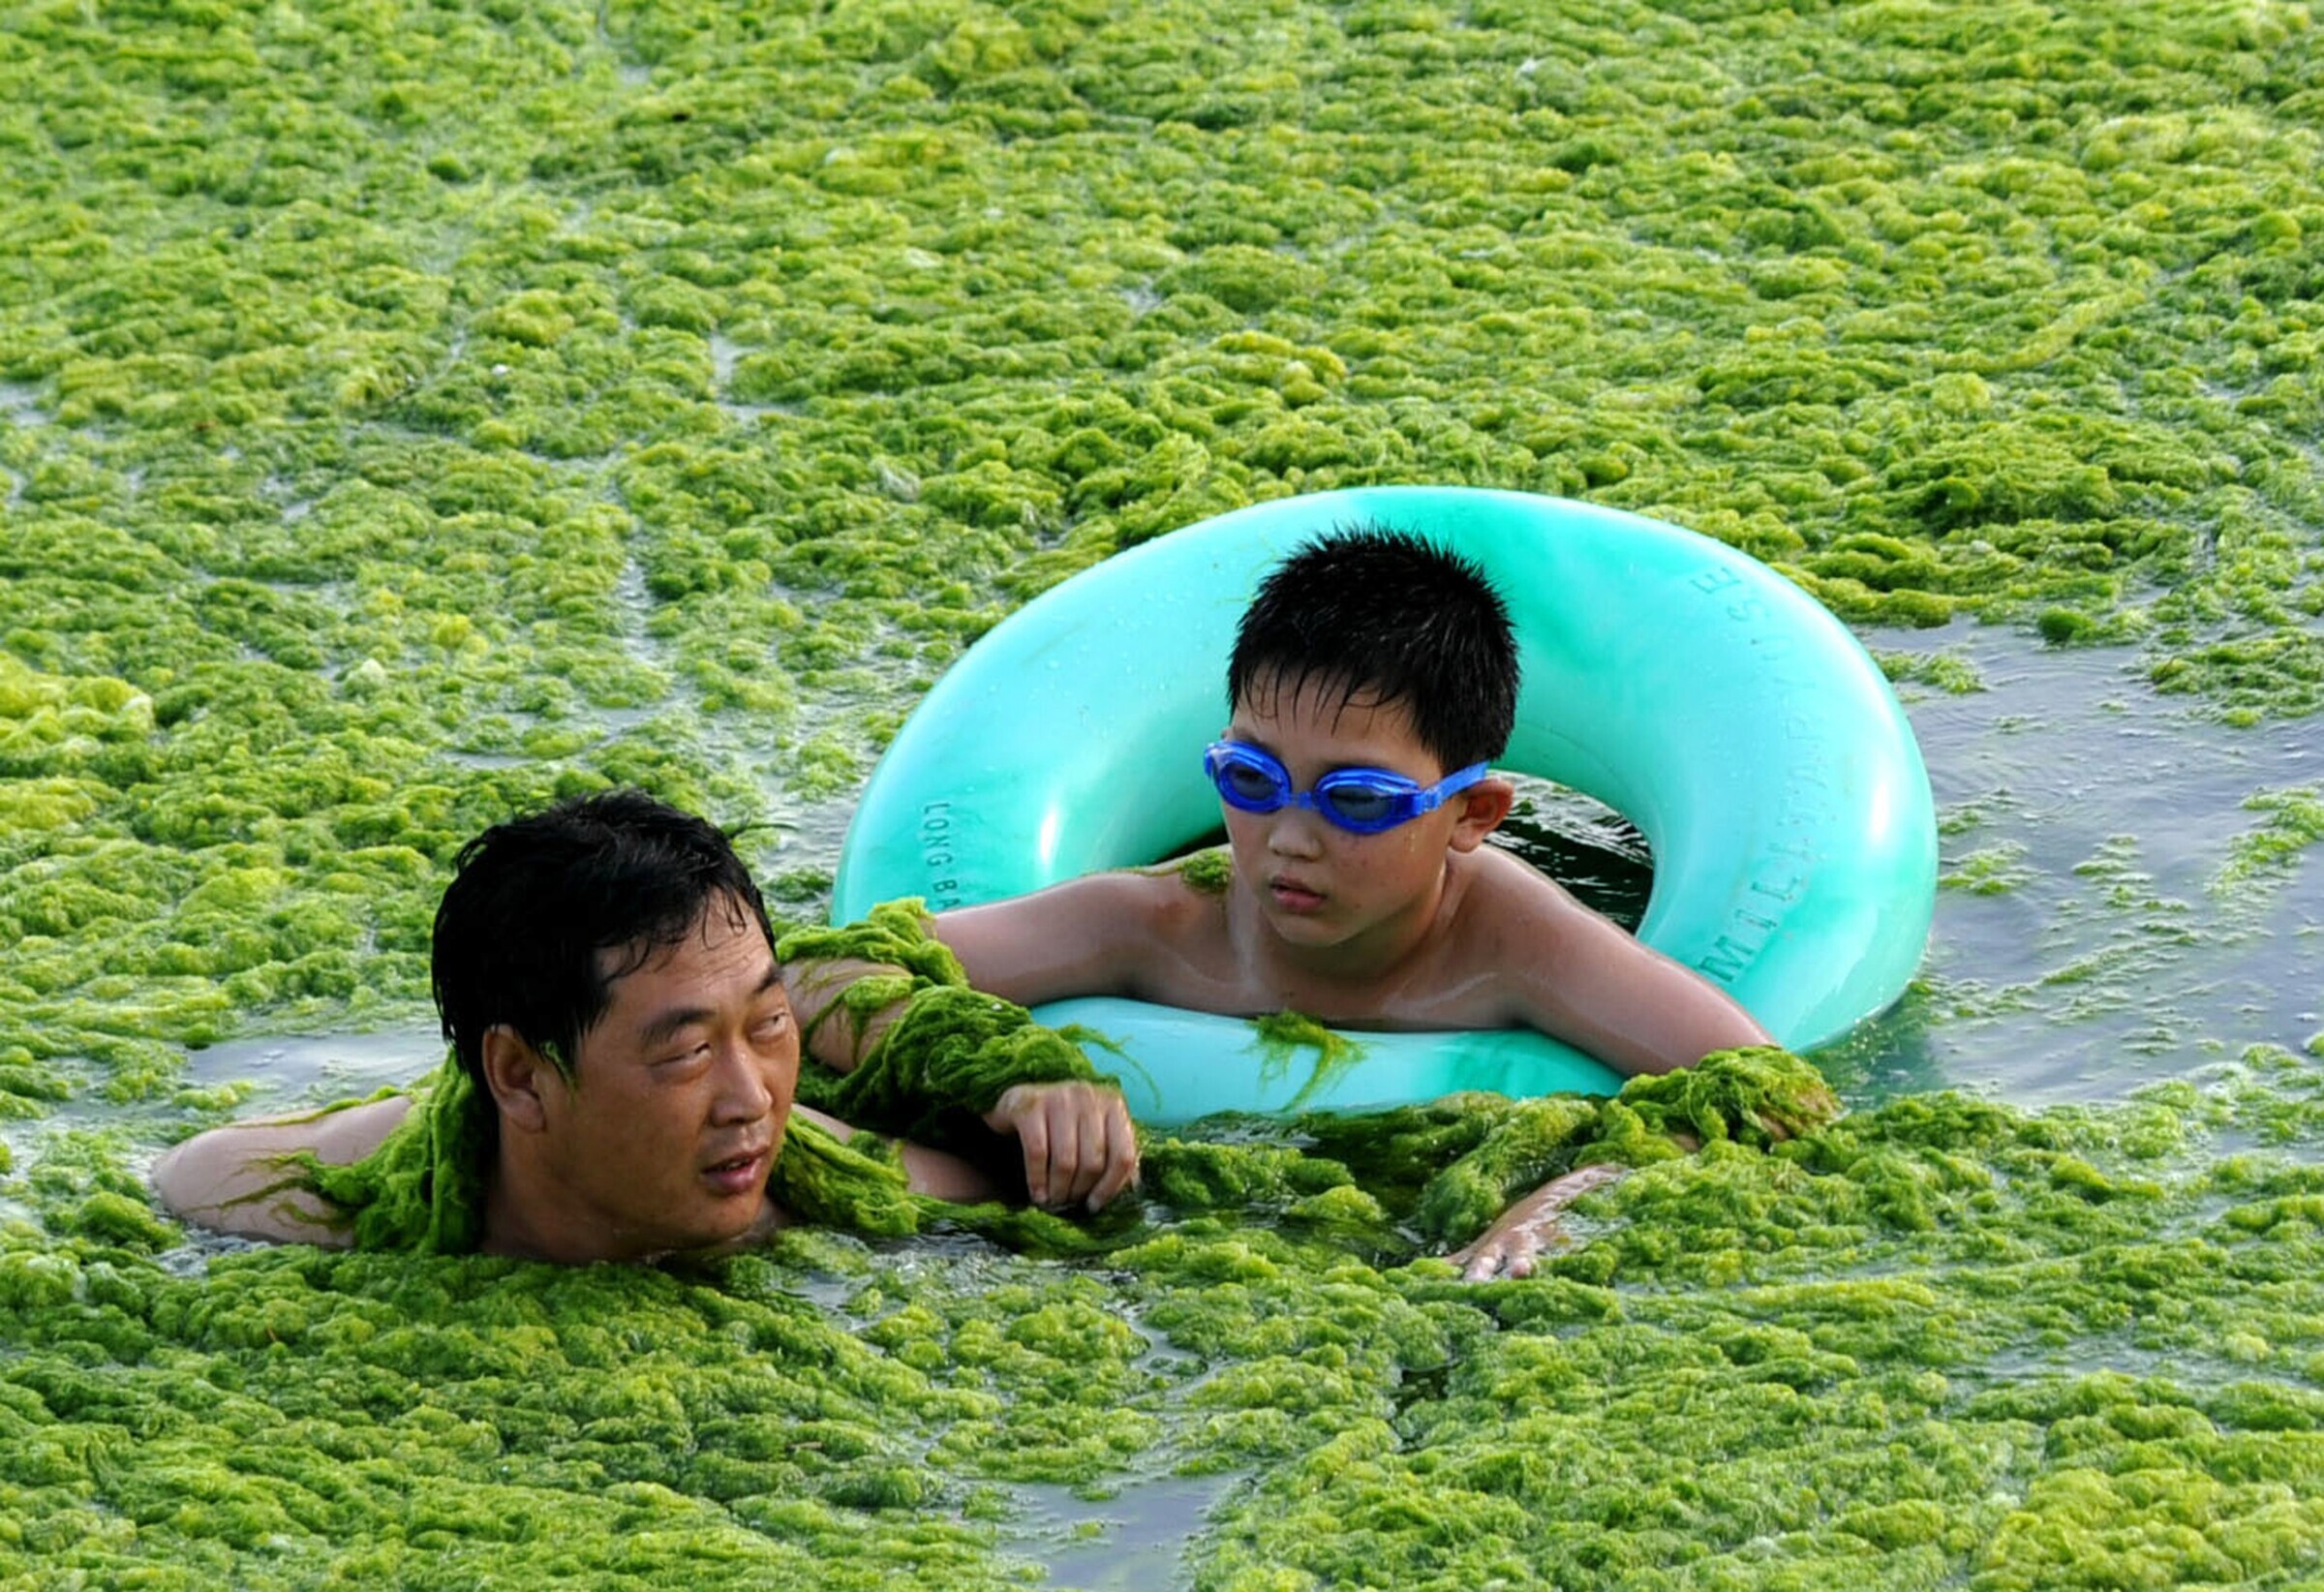 Китайские водоросли. Водоросли в бассейне. Китайцы в бассейне. Человек в водорослях. Зеленый бассейн.